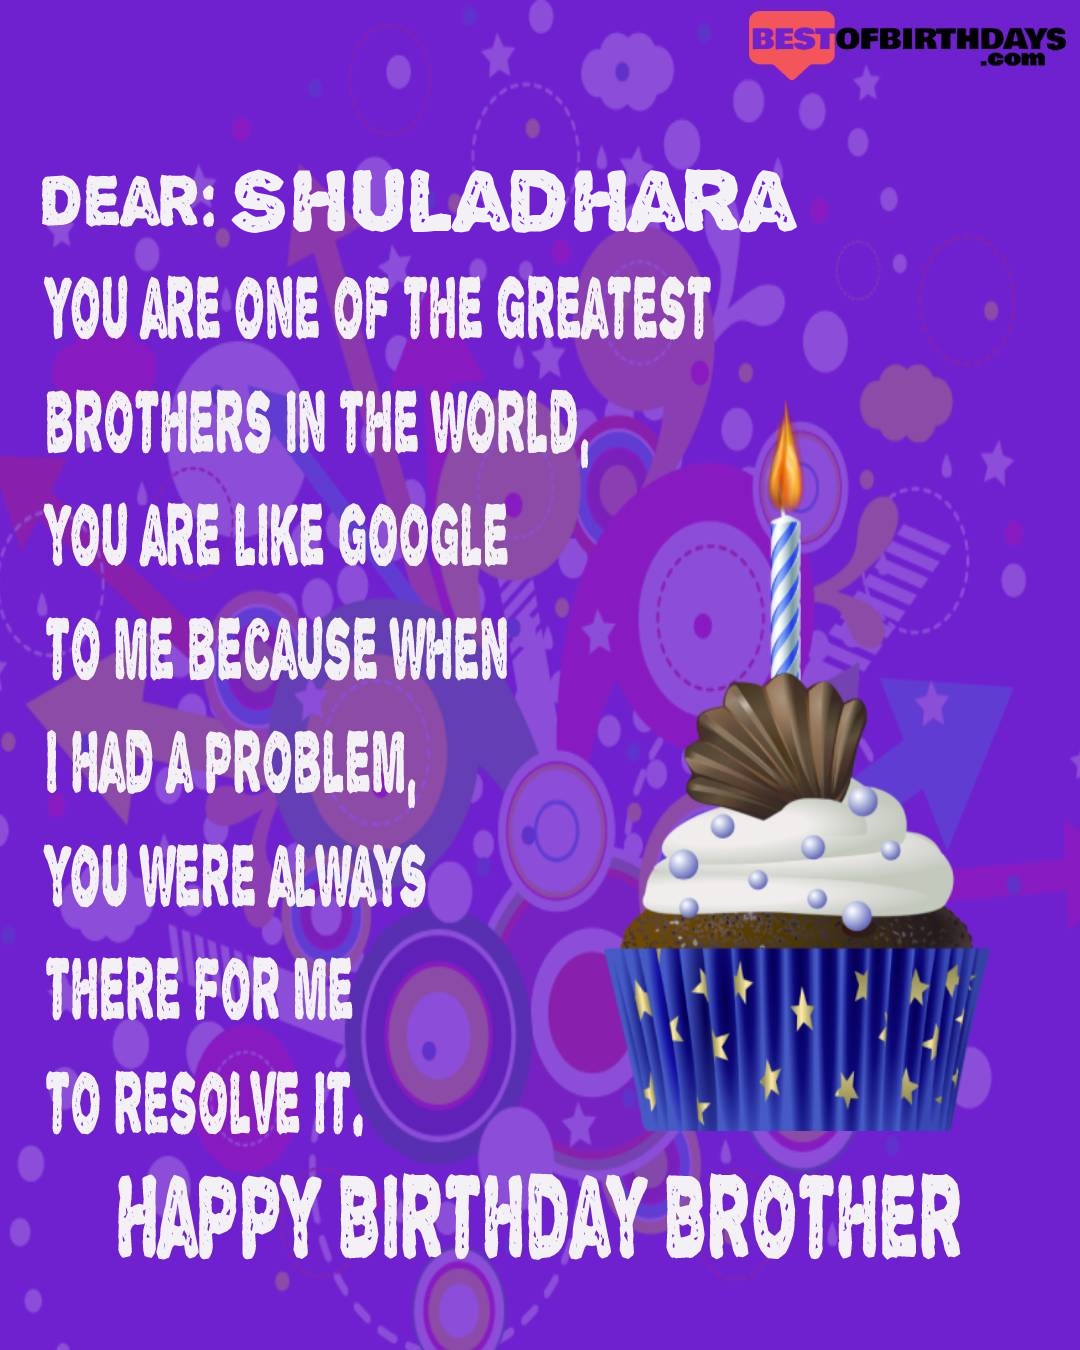 Happy birthday shuladhara bhai brother bro